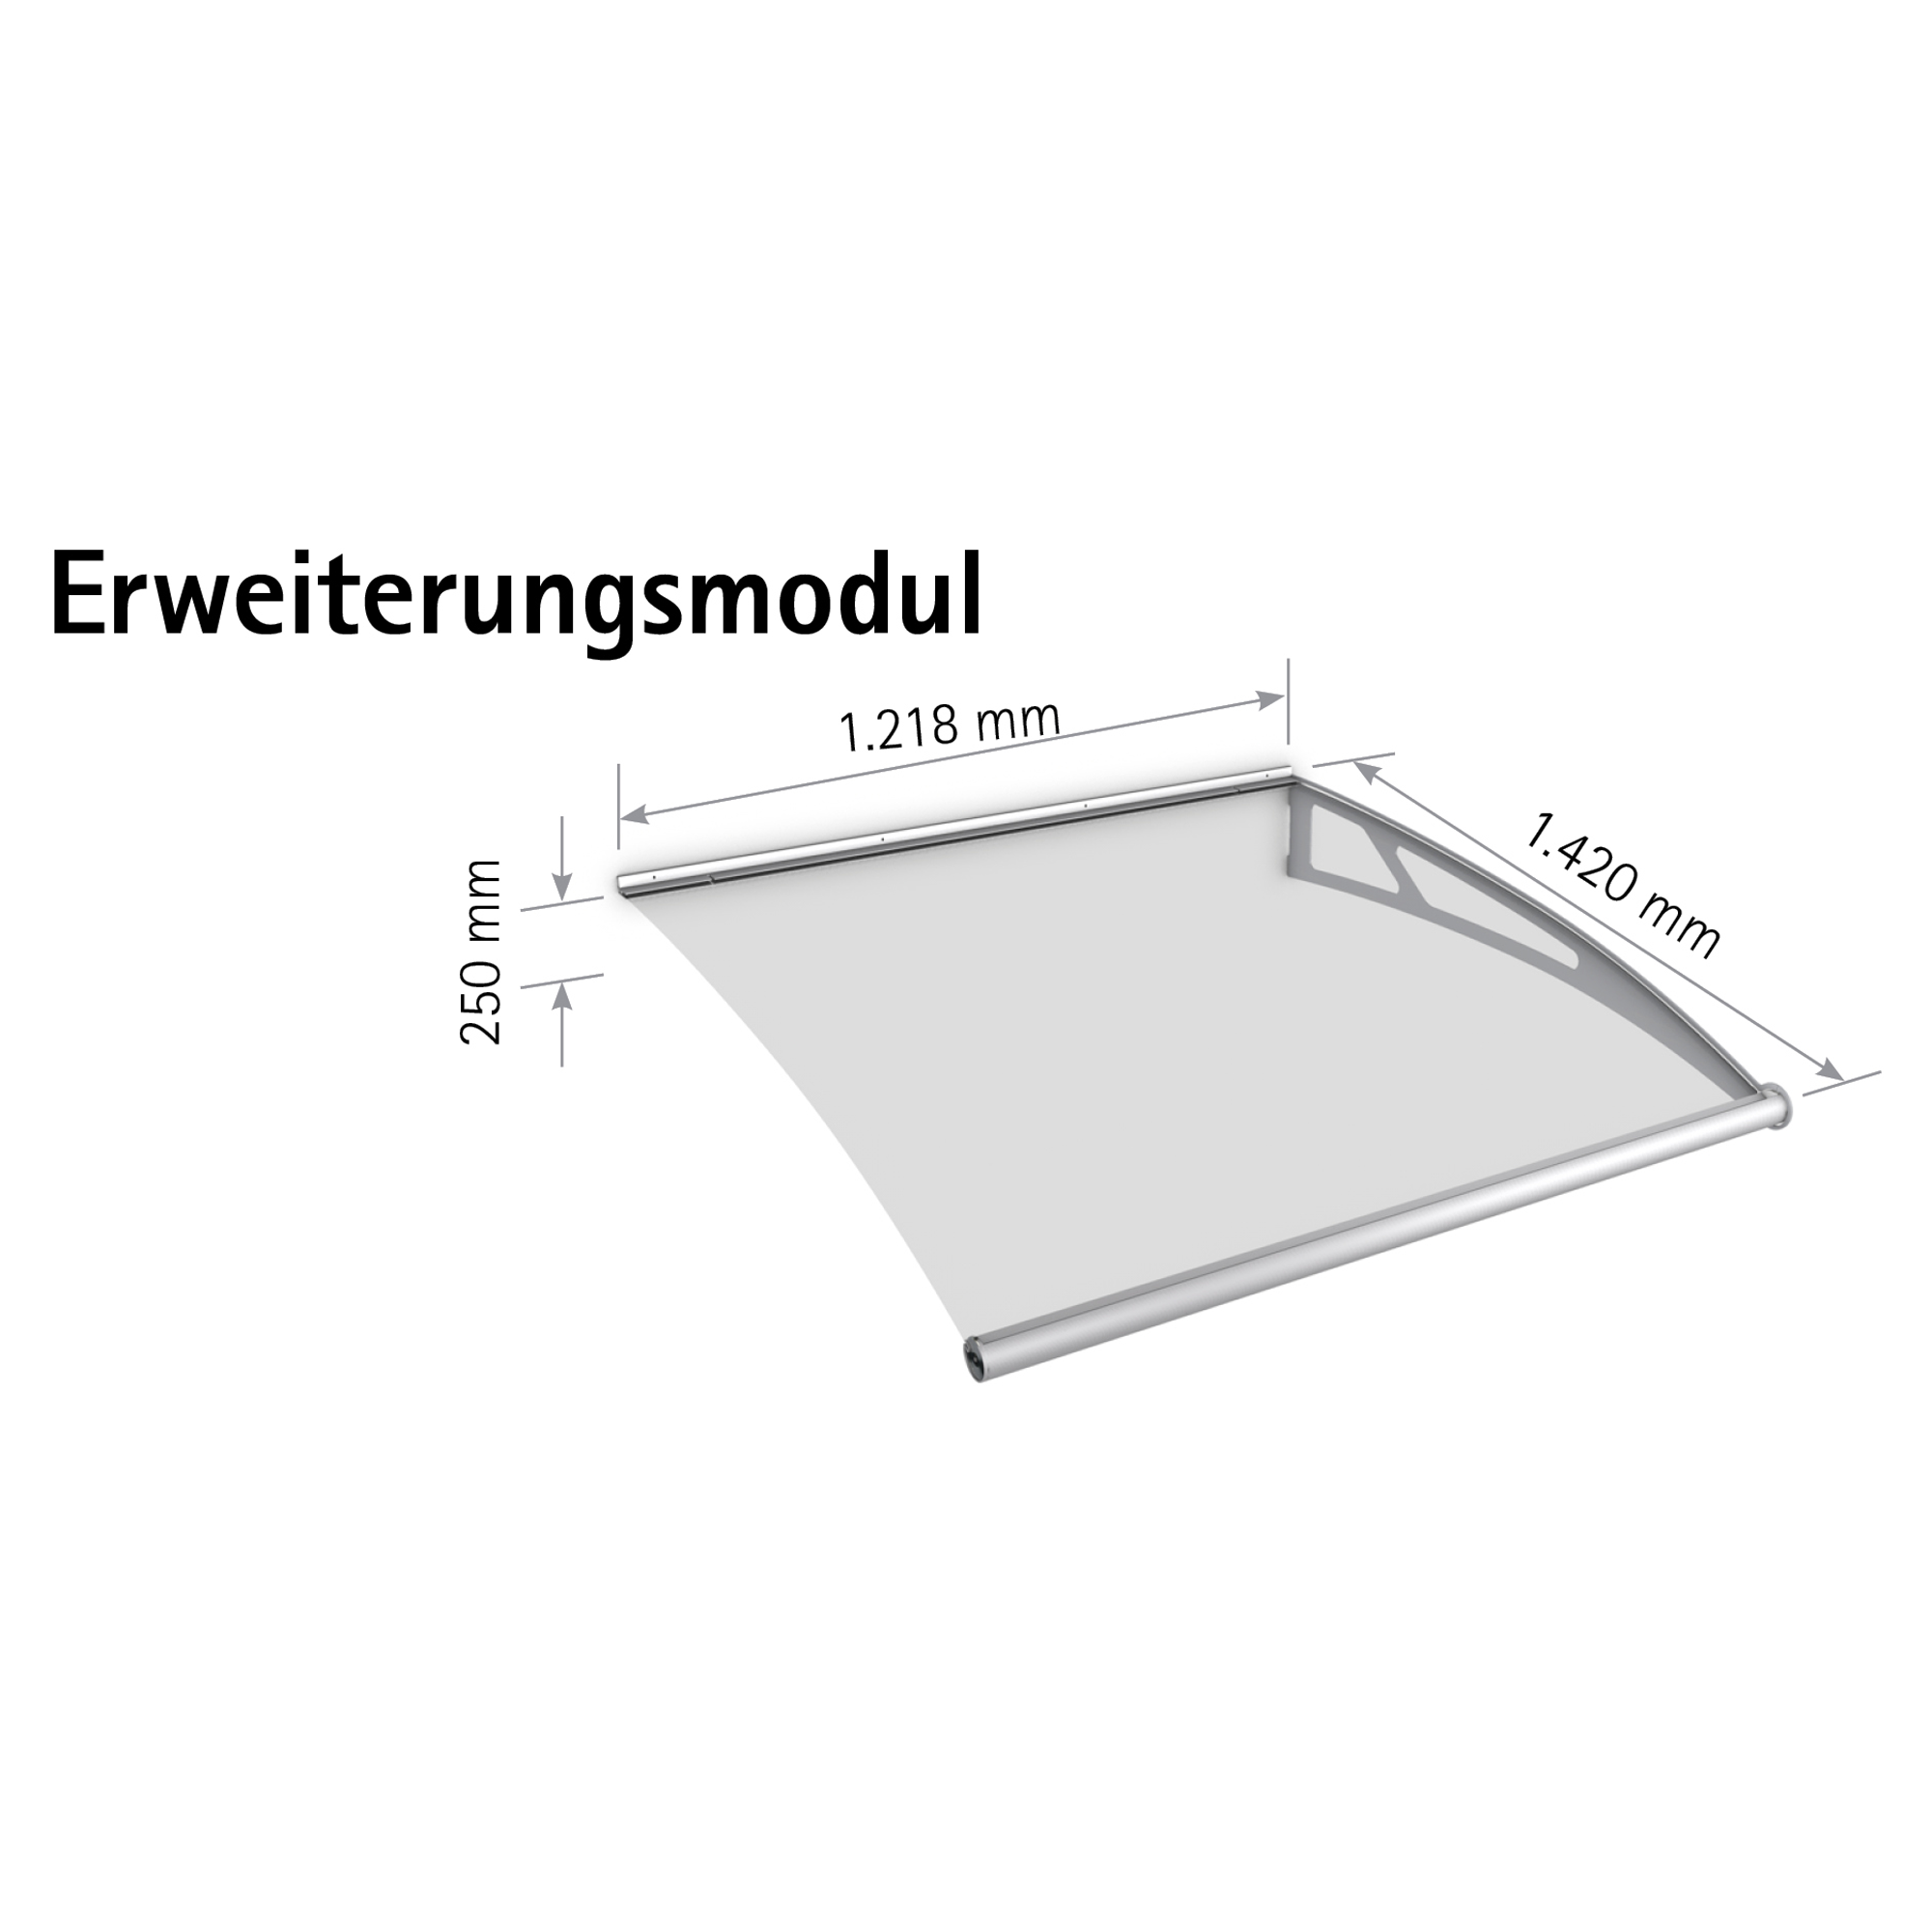 Pultbogen-Vordach "LT-Line" Erweiterungsmodul Edelstahl/Acrylglas blau 122 x 142 cm + product picture